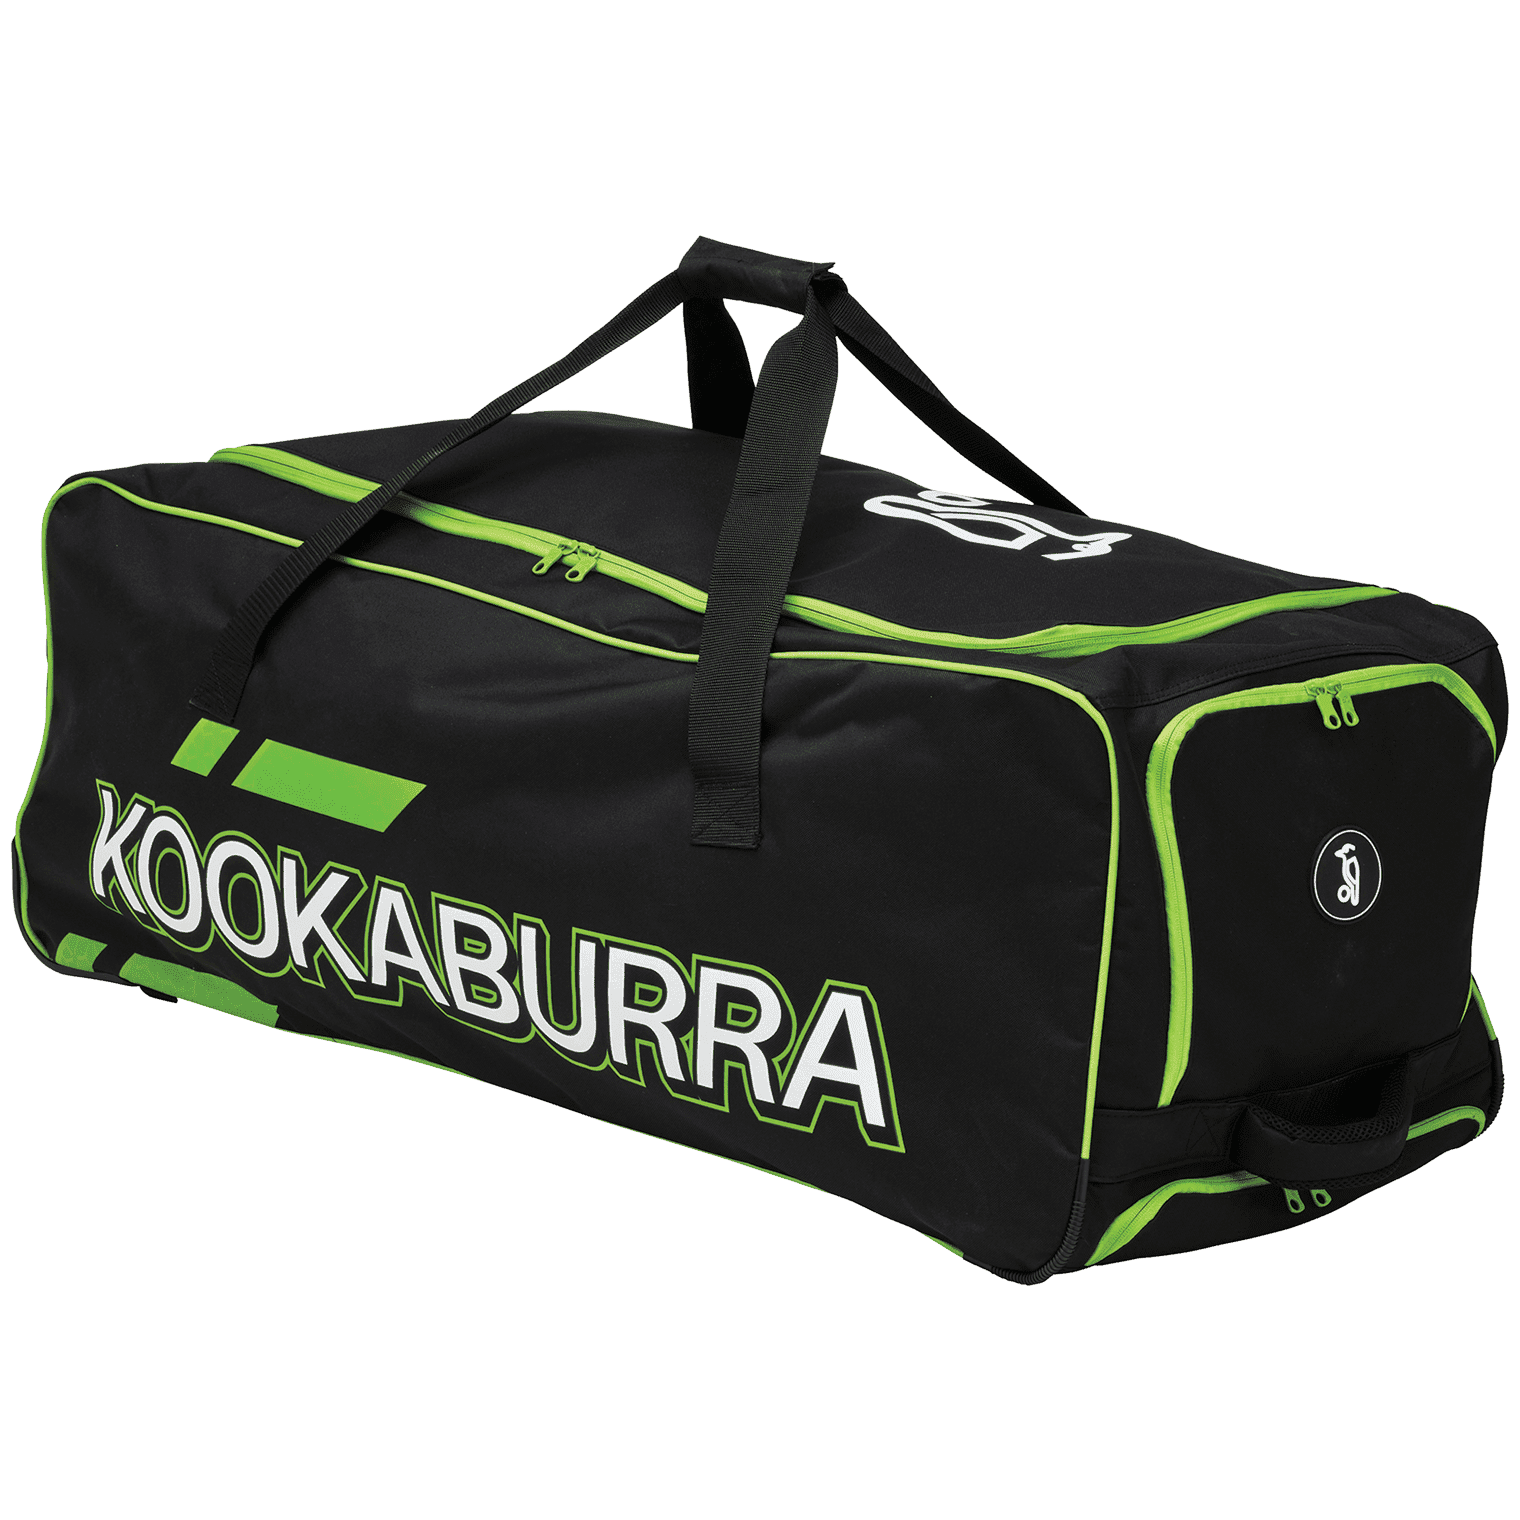 Kookaburra Cricket Bags Kookaburra 2.0 Wheelie Cricket Bag